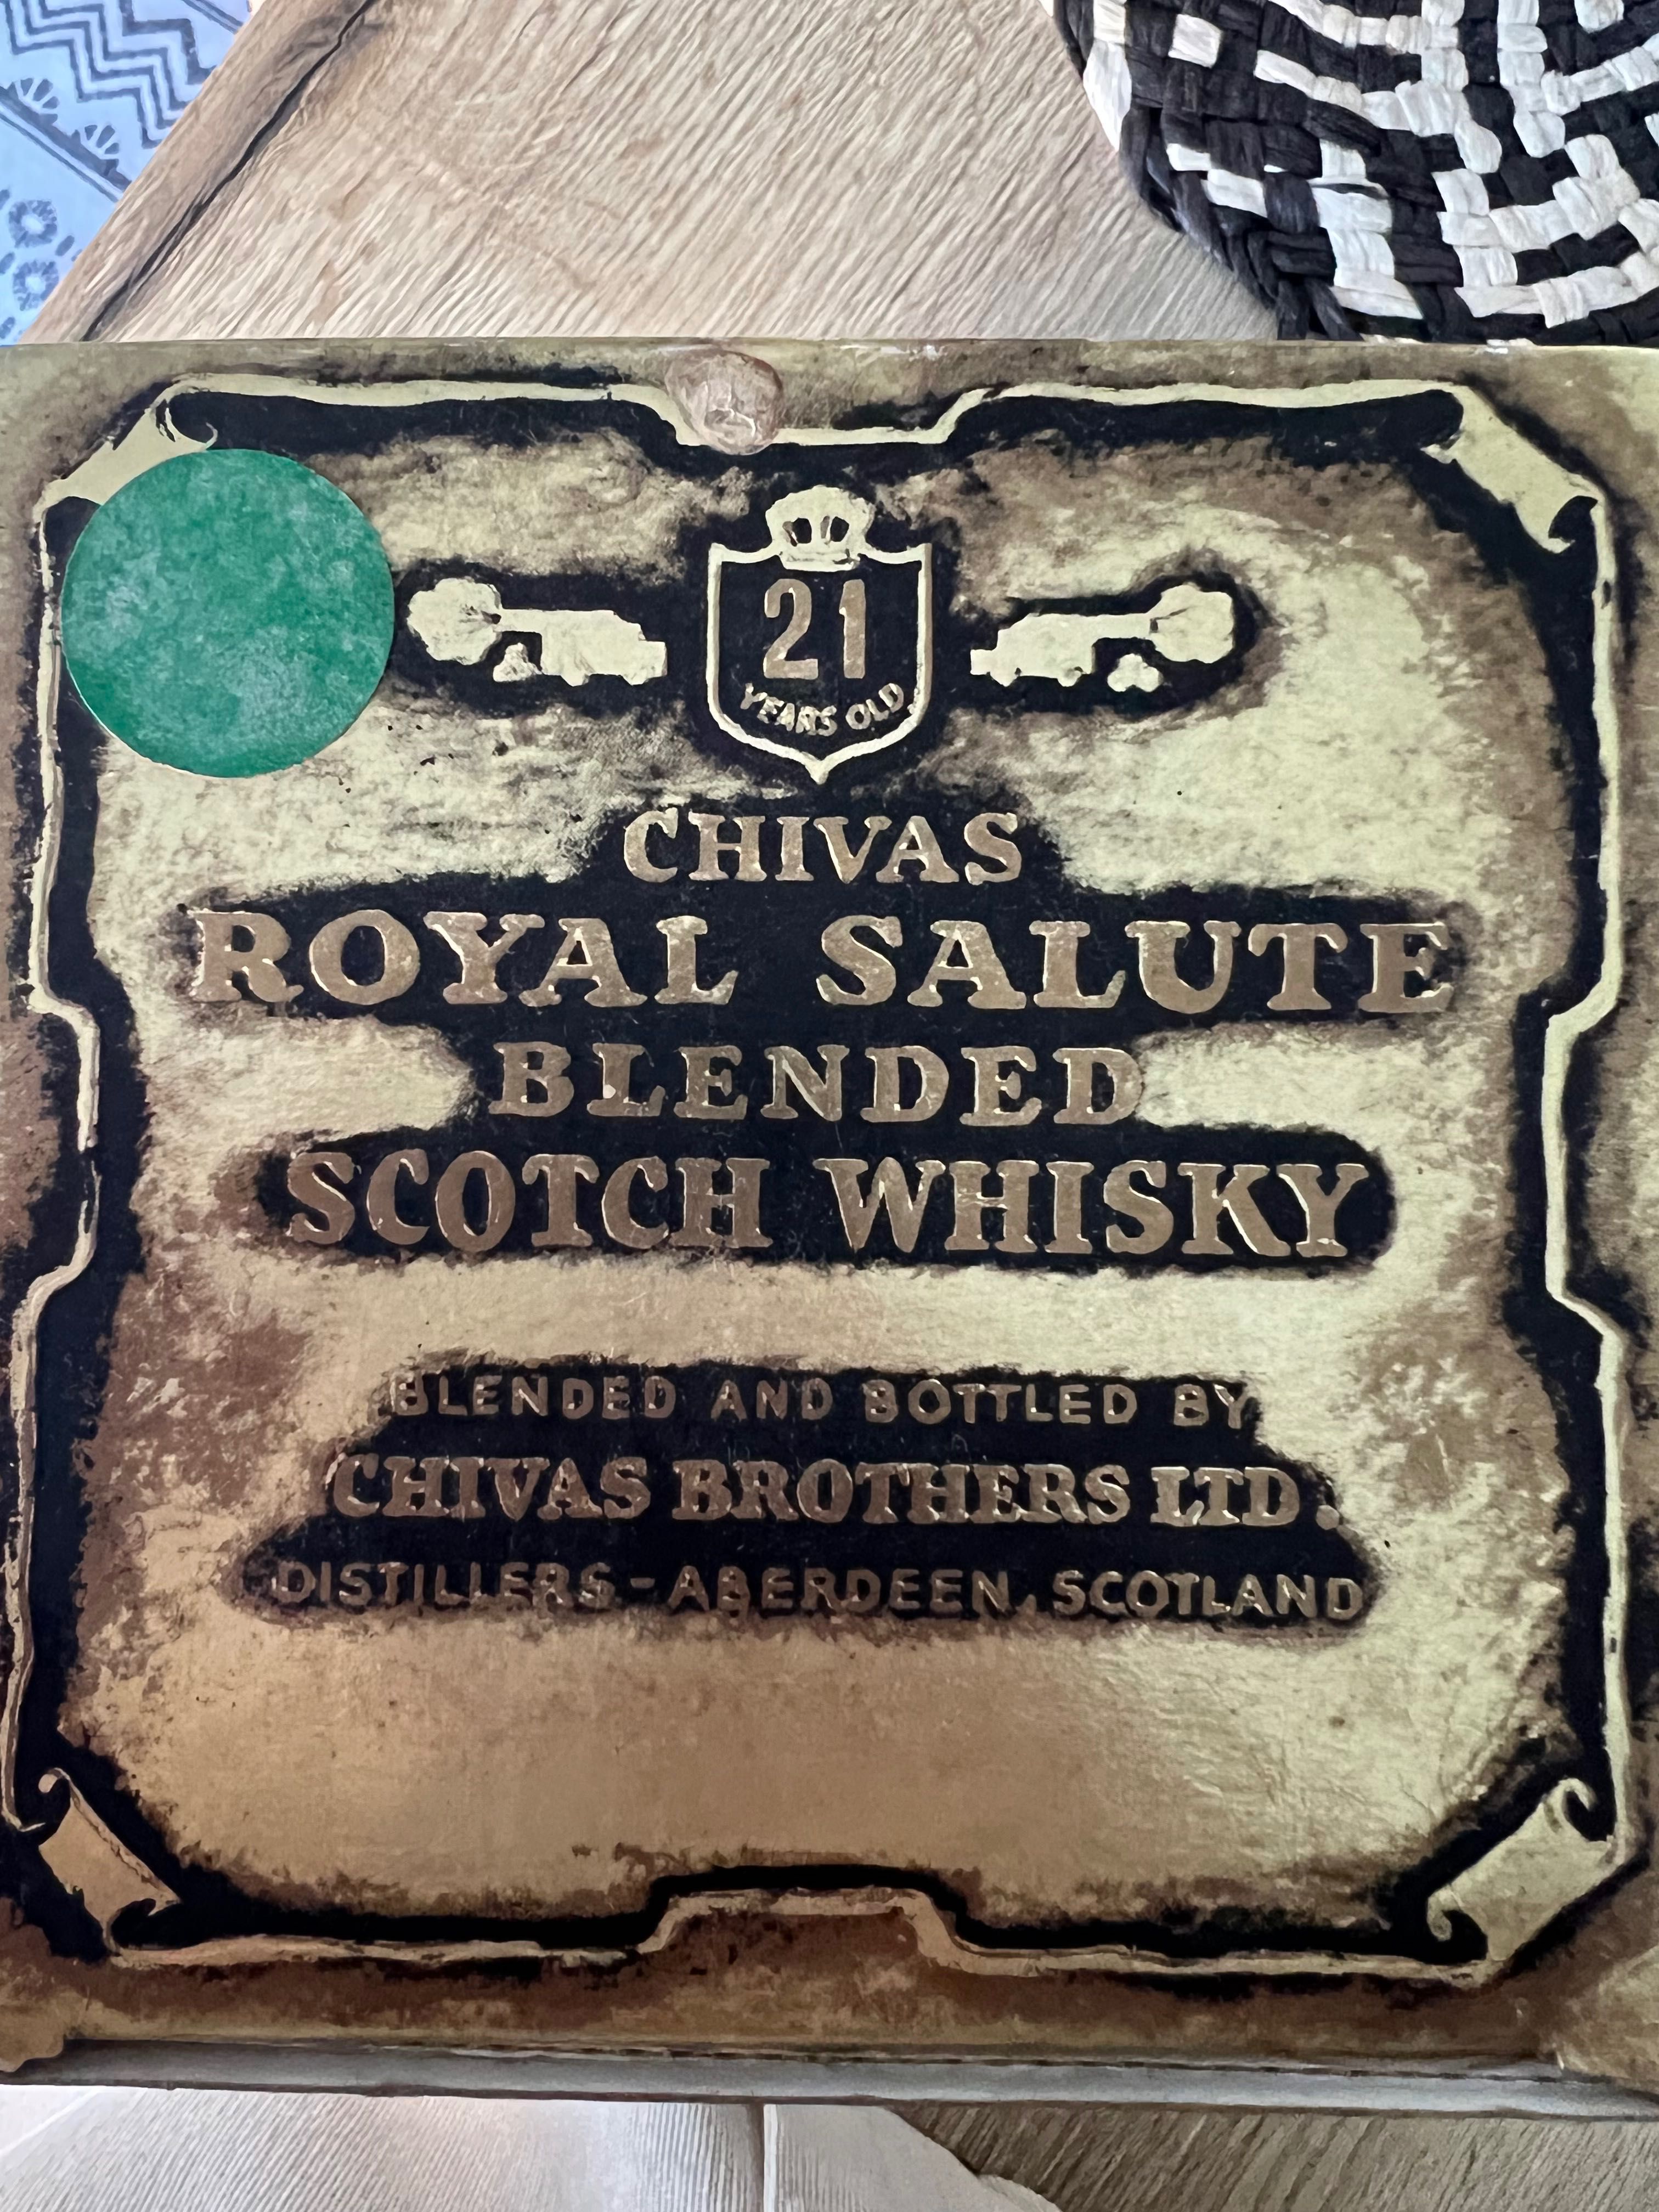 Scotch Whisky 21 Chivas Brothers Ltd.